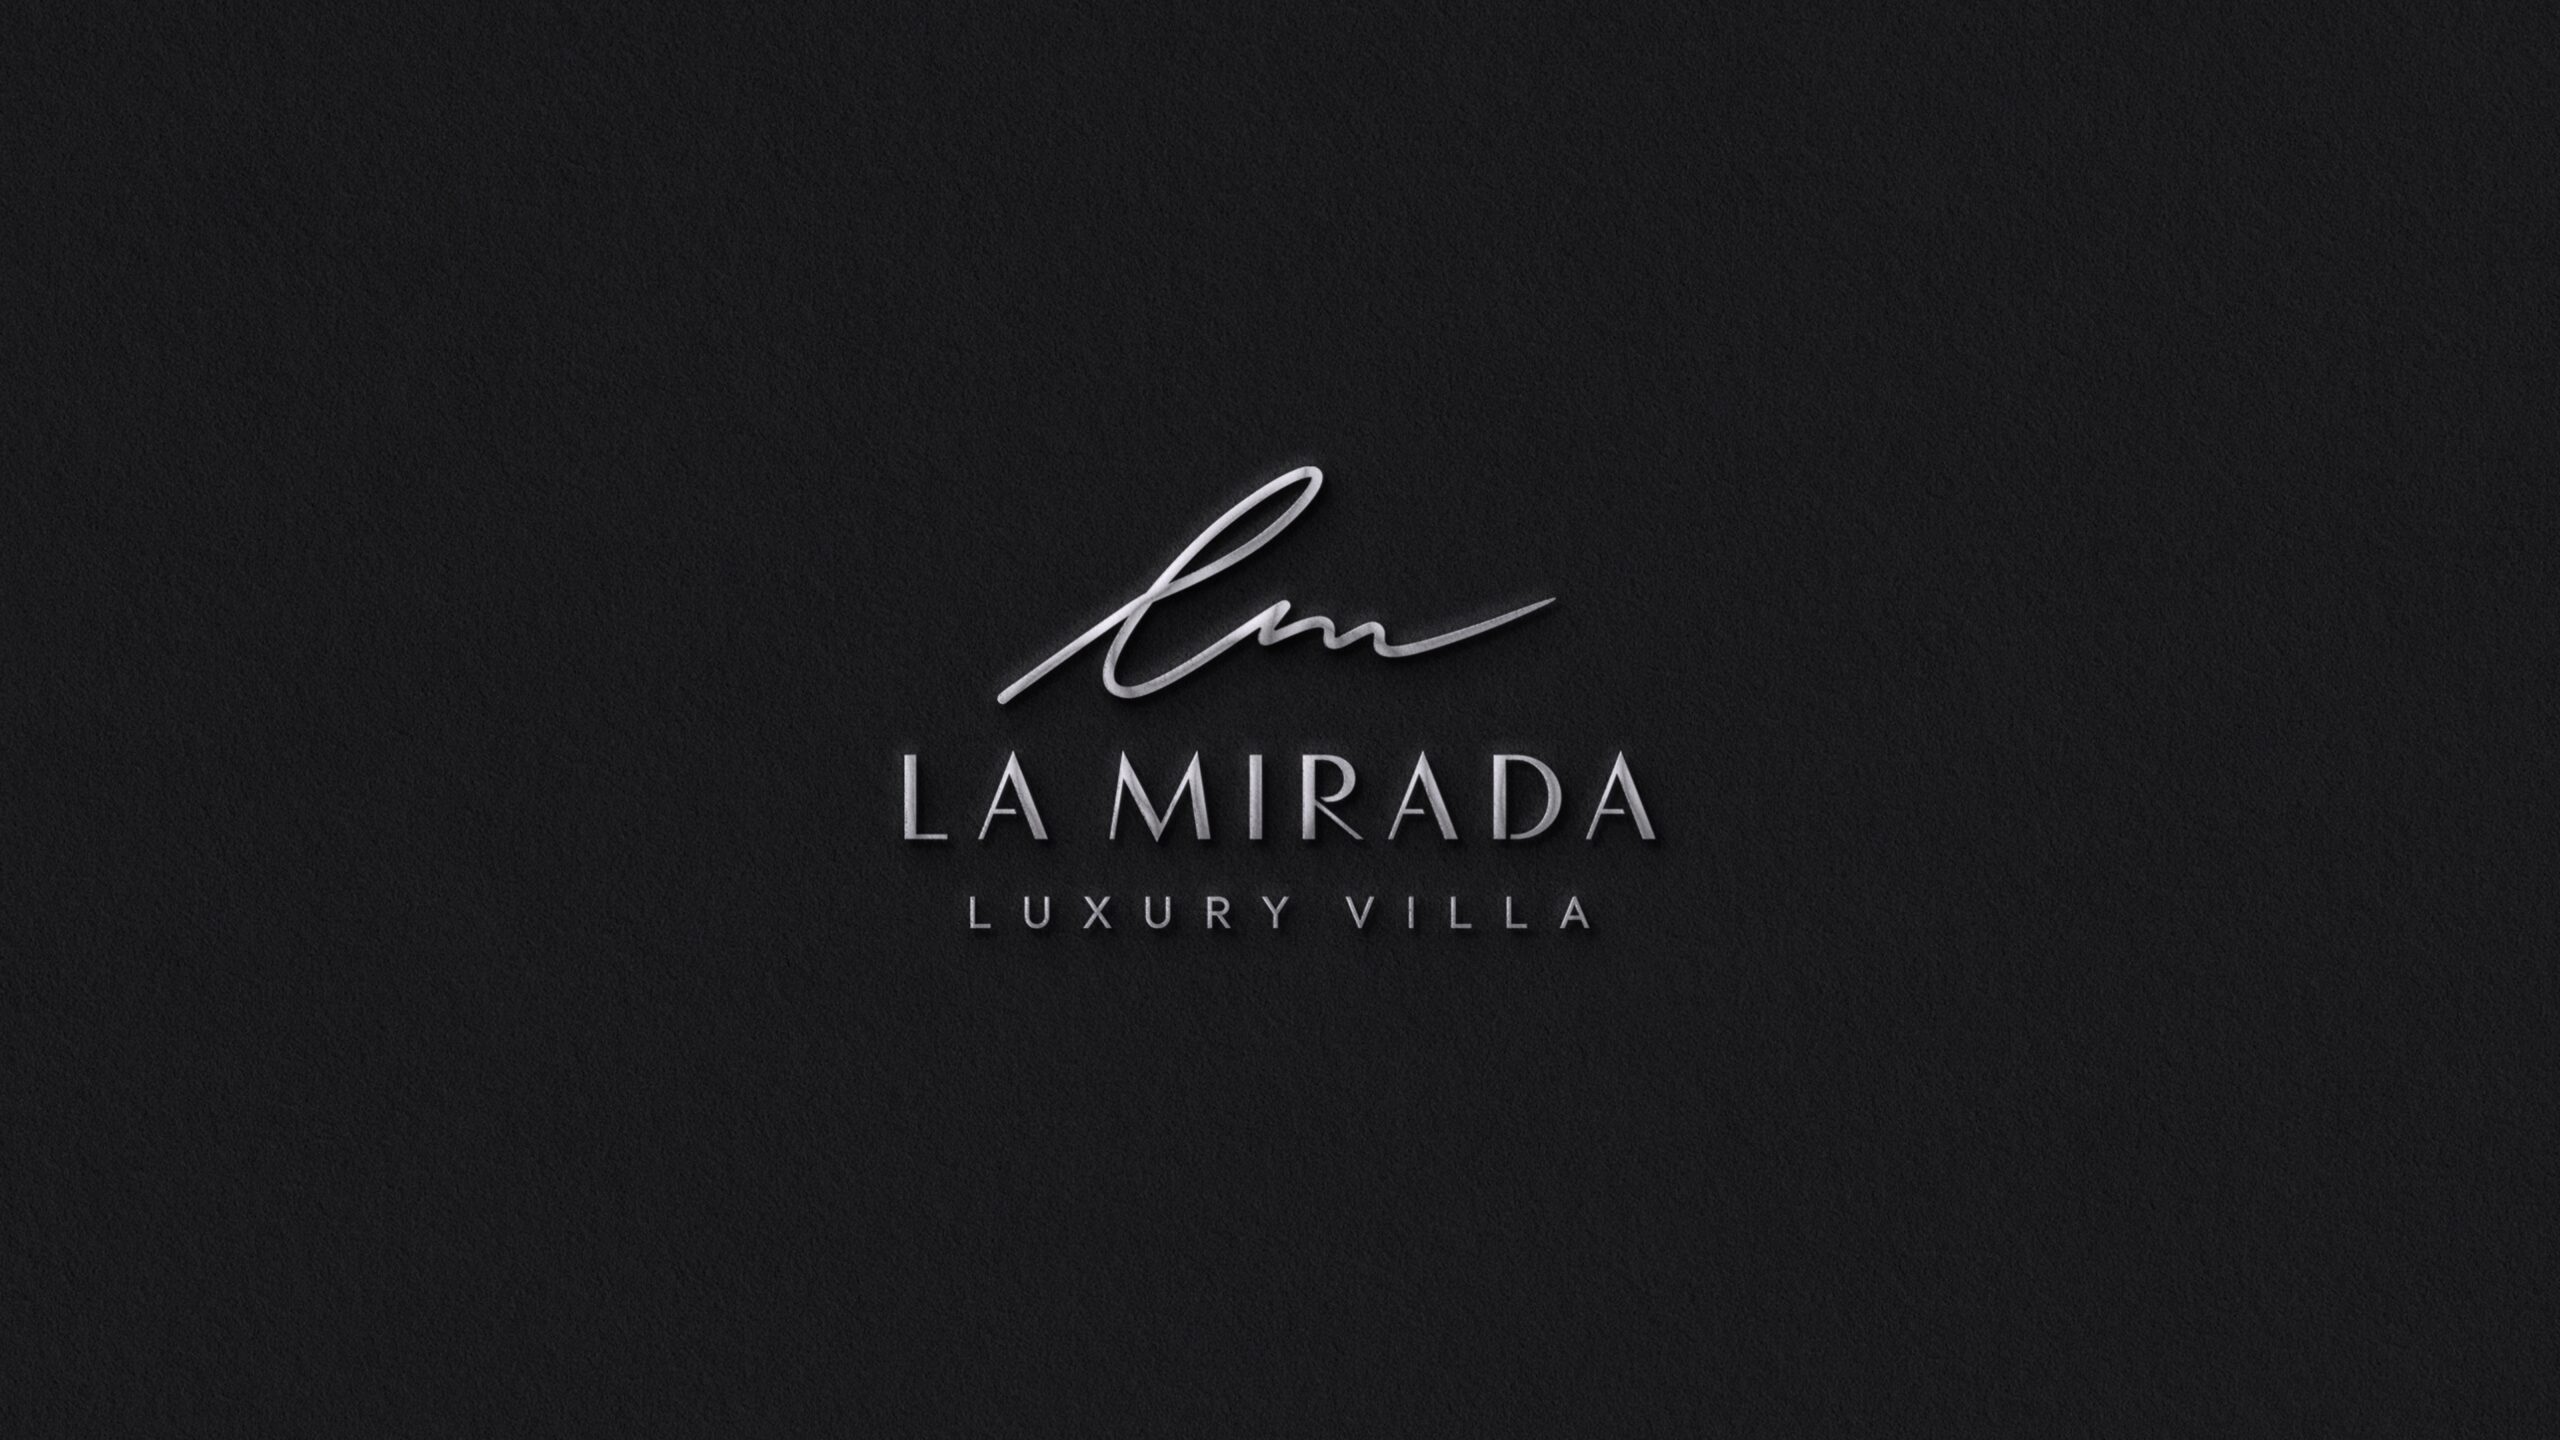 Luxury Villa La Mirada